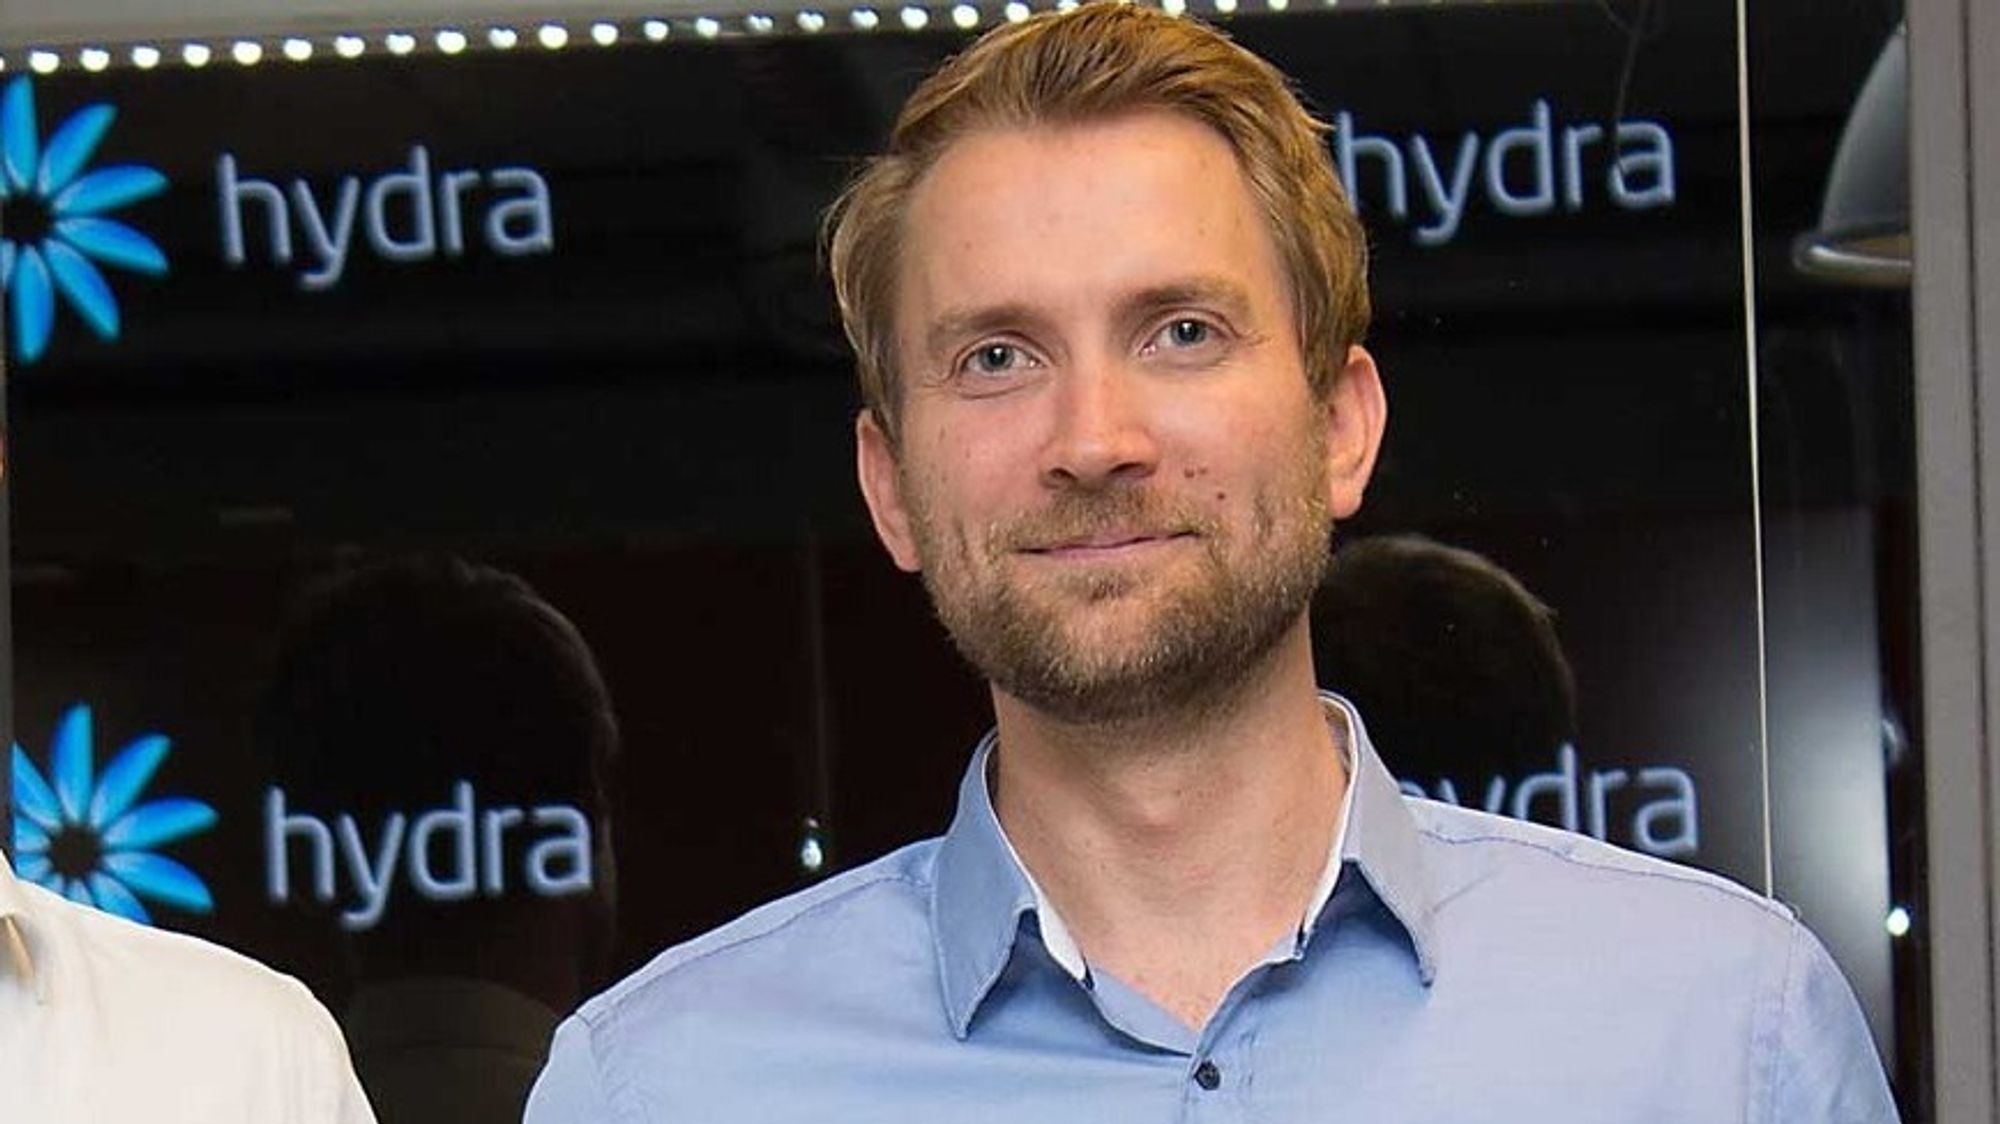 Daglig leder Arve Paalsrud i Bayonette har nå solgt alt innholdet i selskapet, de siste restene til Konica Minolta. Nå satser han videre på wifi-teknologi i selskapet Wio.